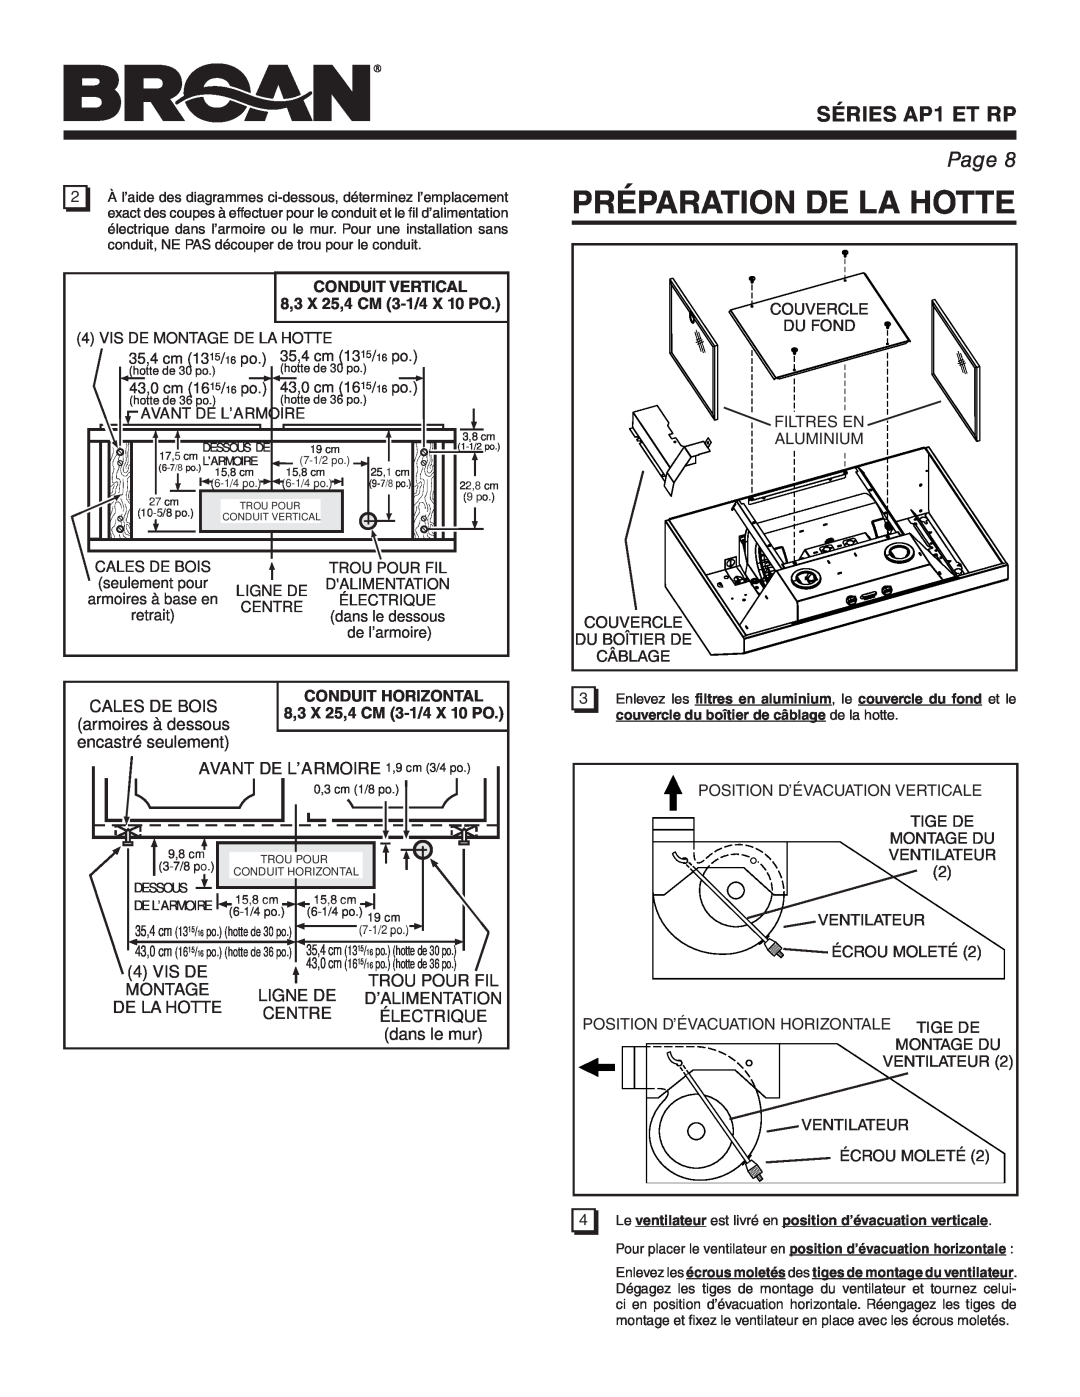 Broan RP Préparation De La Hotte, AVANT DE L’ARMOIRE 1,9 cm 3/4 po, Conduit Vertical, 8,3 X 25,4 CM 3-1/4 X 10 PO, Centre 